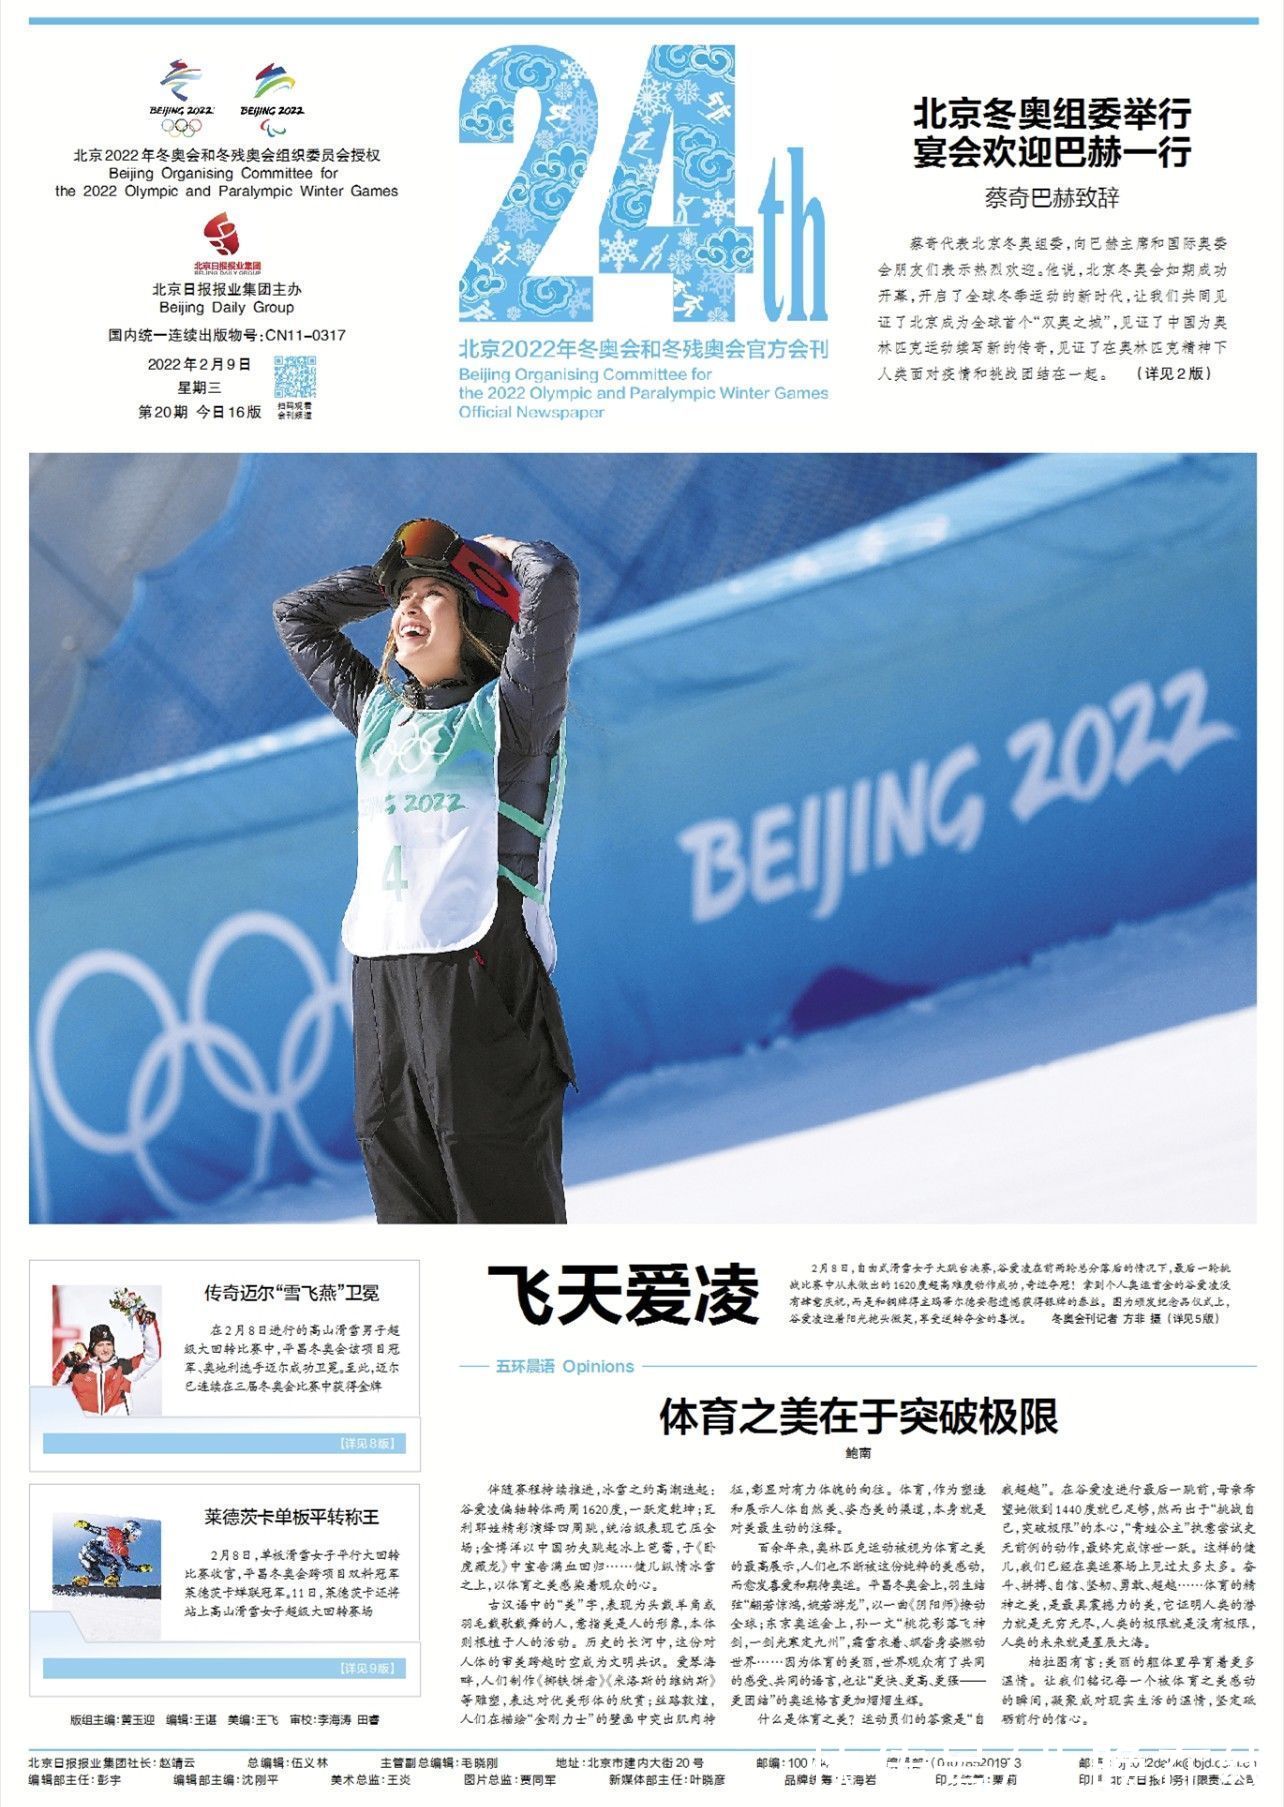 北京冬奥组委|羽生结弦也看了这份报纸 你看了吗？